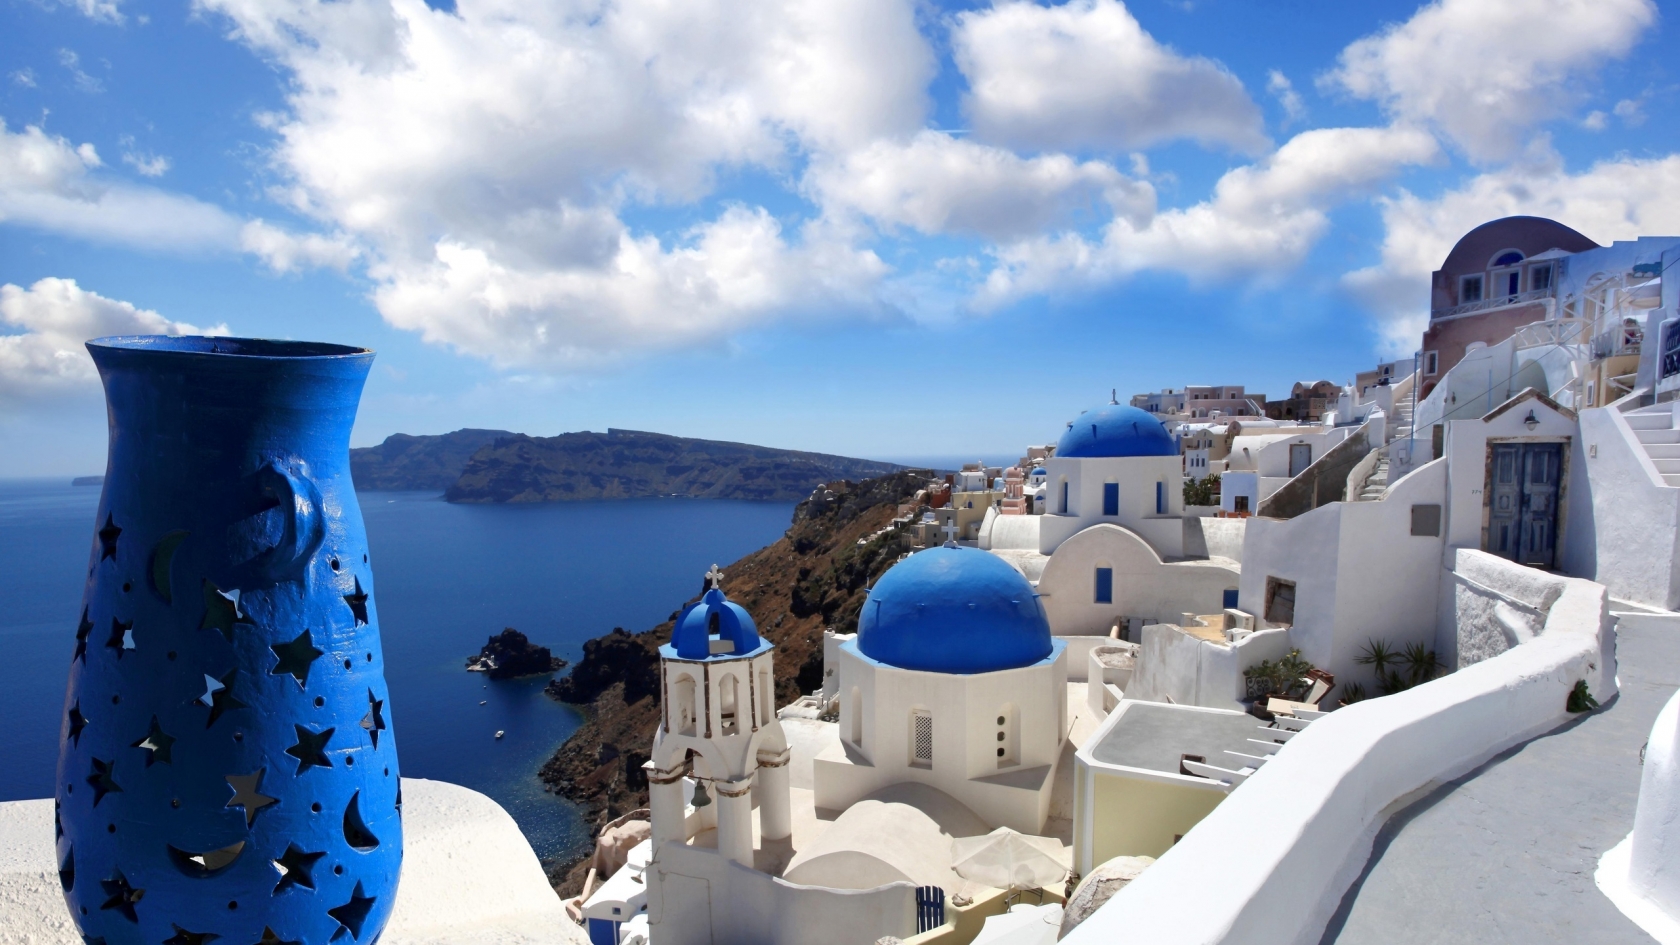 Blue Santorini Greece for 1680 x 945 HDTV resolution